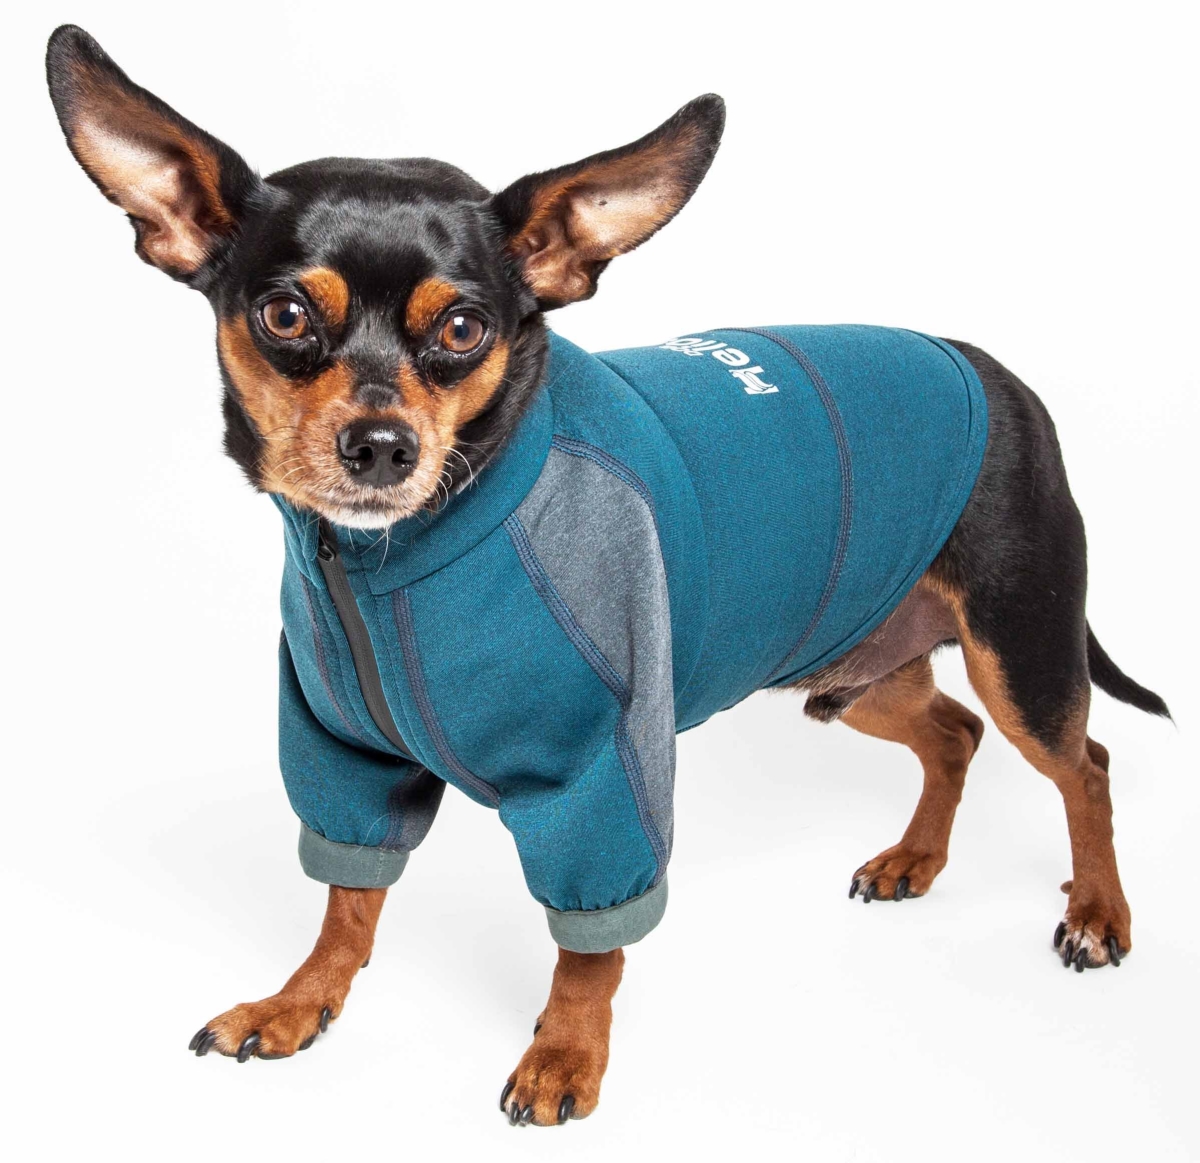 Tshl6blxl Eboneflow Mediumweight 4-way-stretch Flexible & Breathable Performance Dog Yoga T-shirt, Ocean Blue & Grey - Extra Large